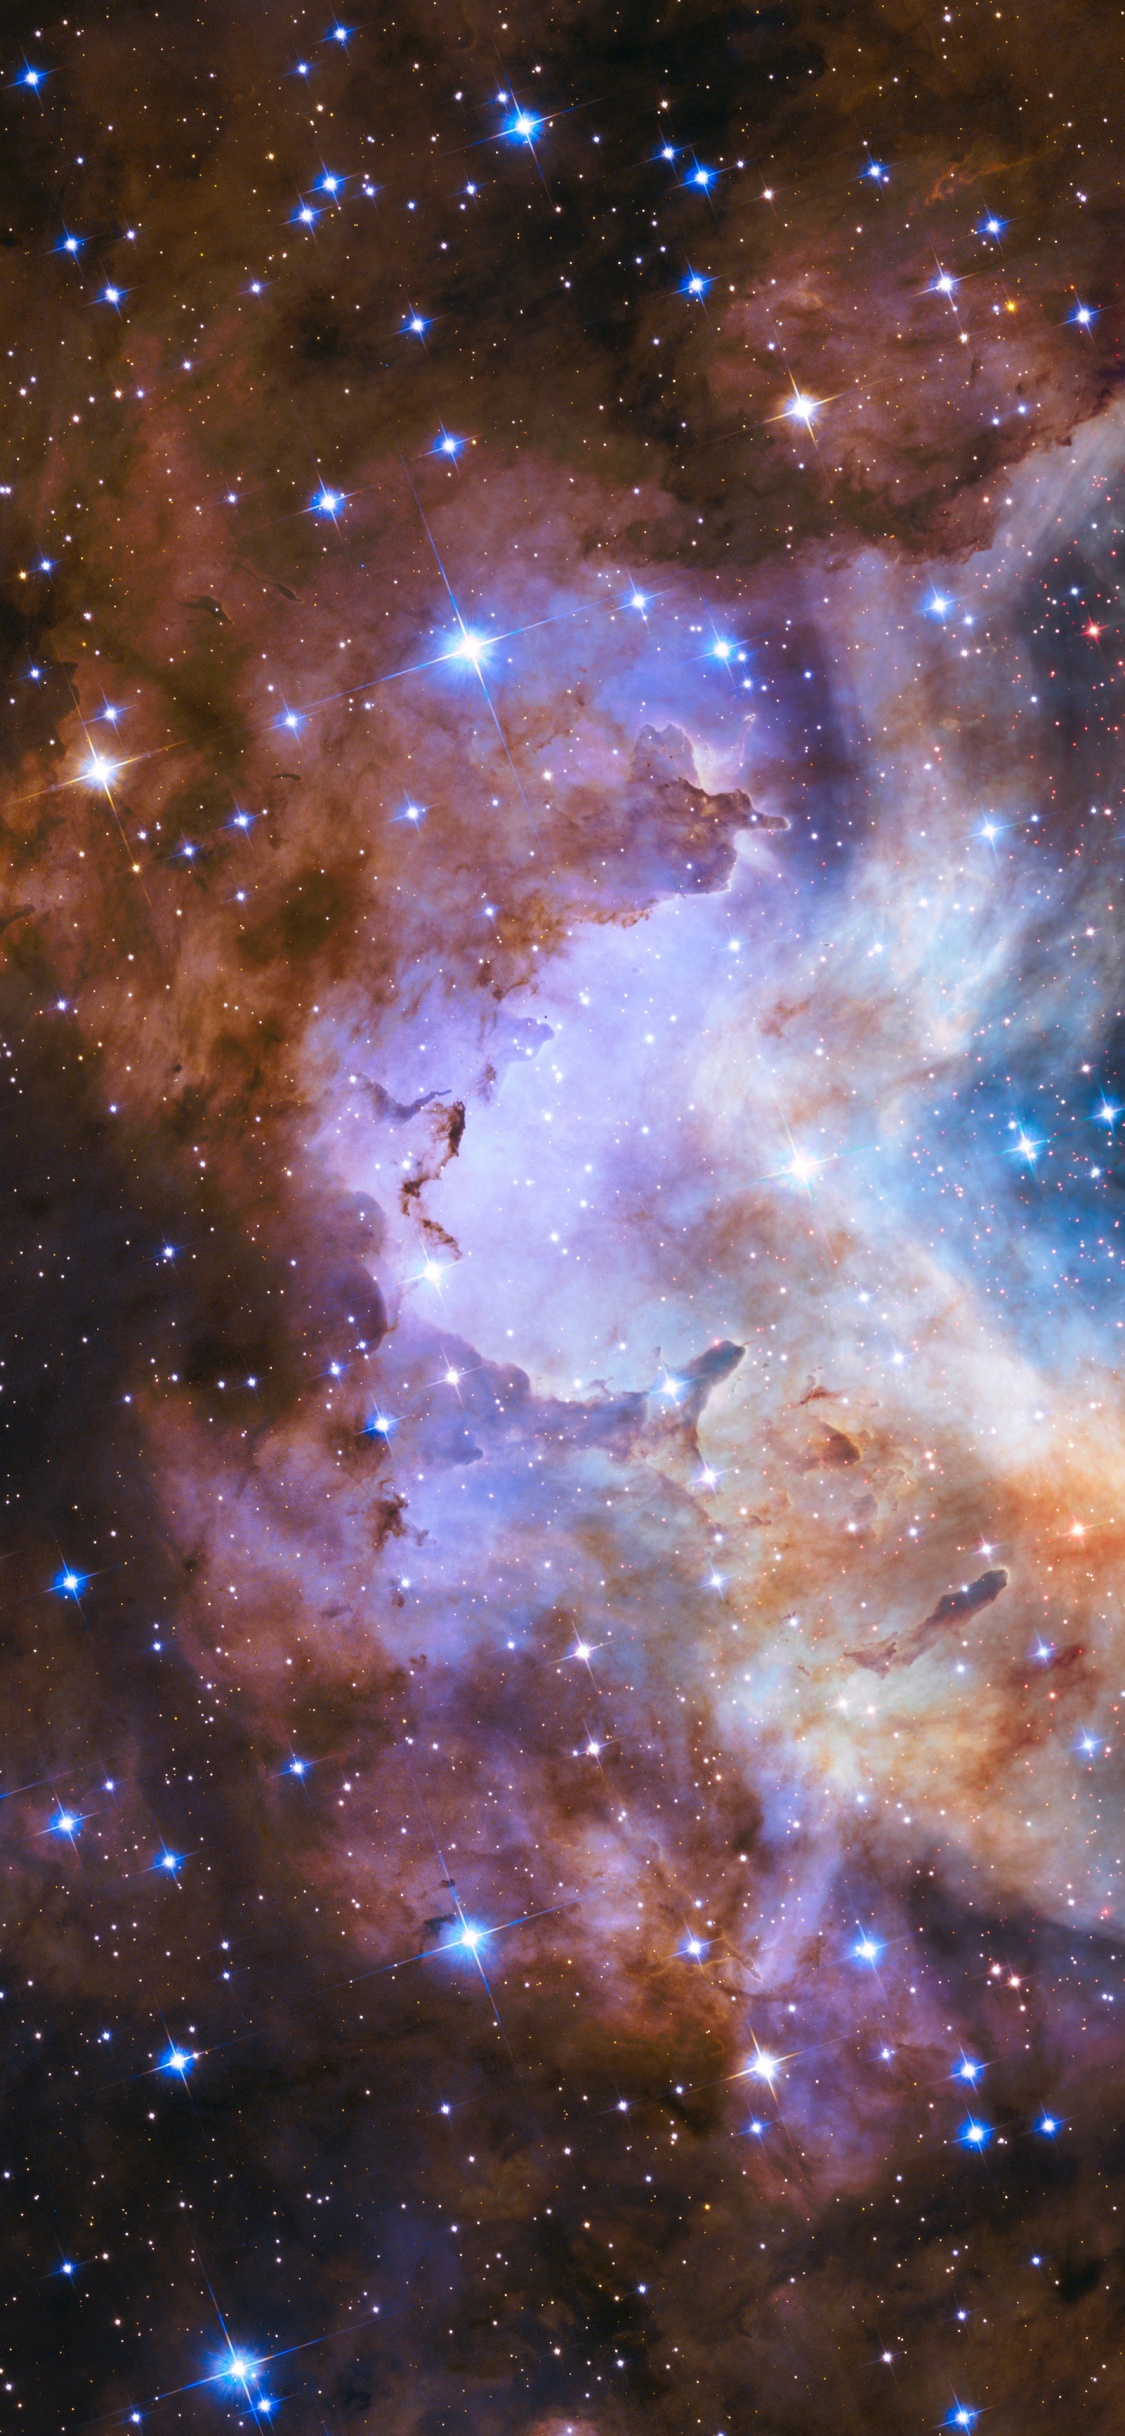 明星, 哈勃太空望远镜, 星团, 宇宙, 天文学 壁纸 1125x2436 允许